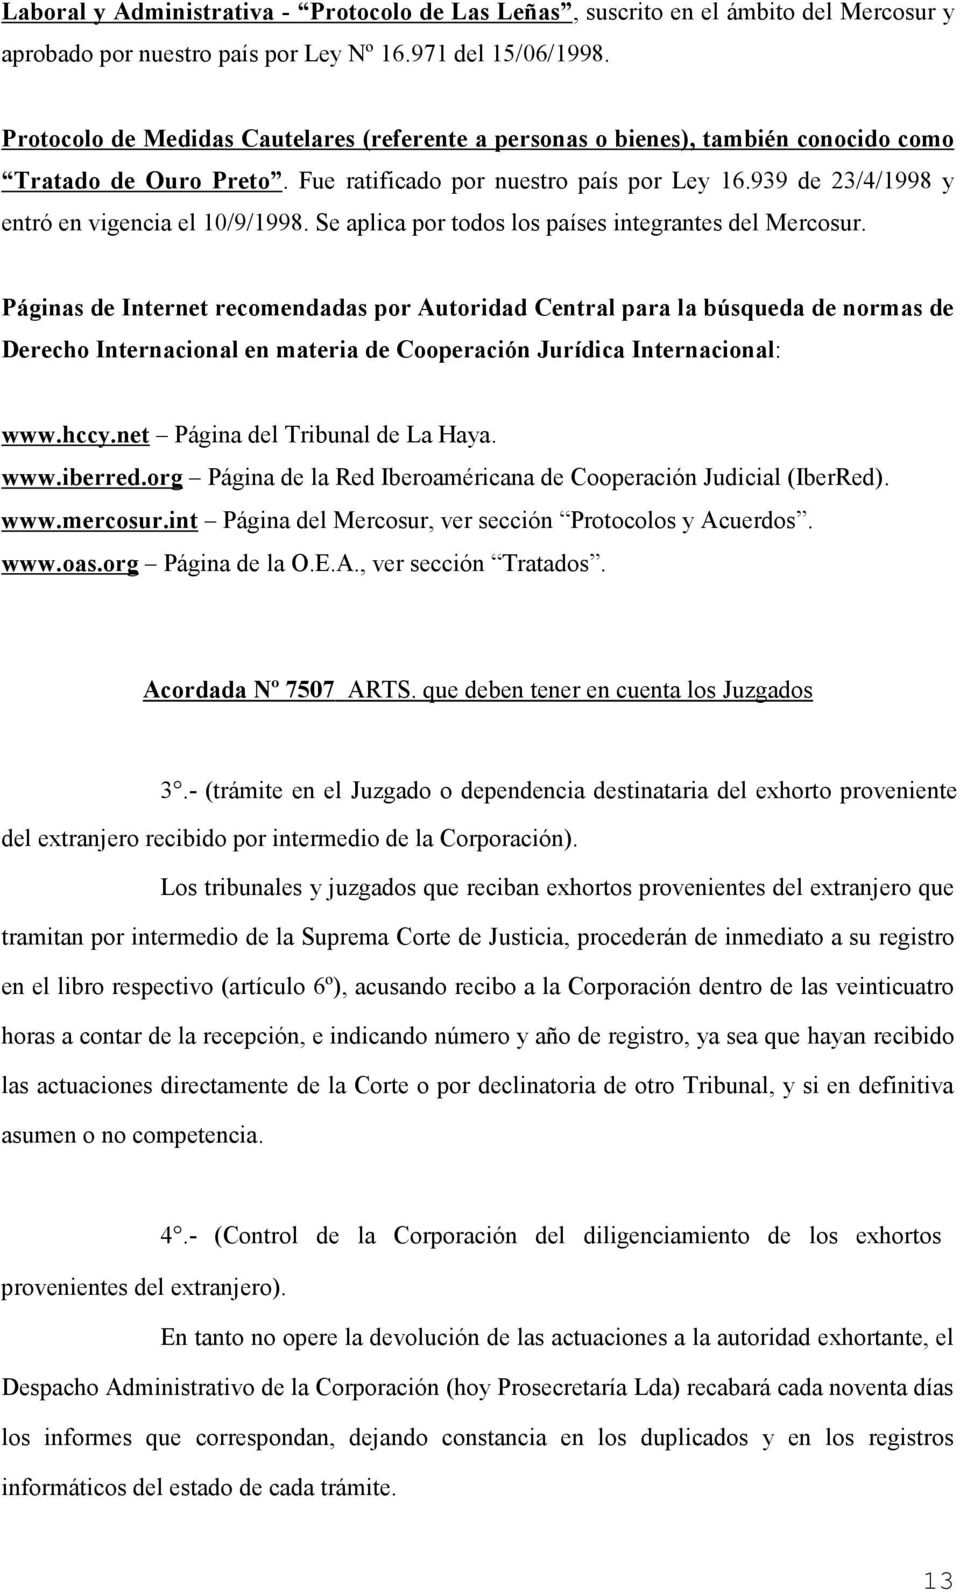 939 de 23/4/1998 y entró en vigencia el 10/9/1998. Se aplica por todos los países integrantes del Mercosur.